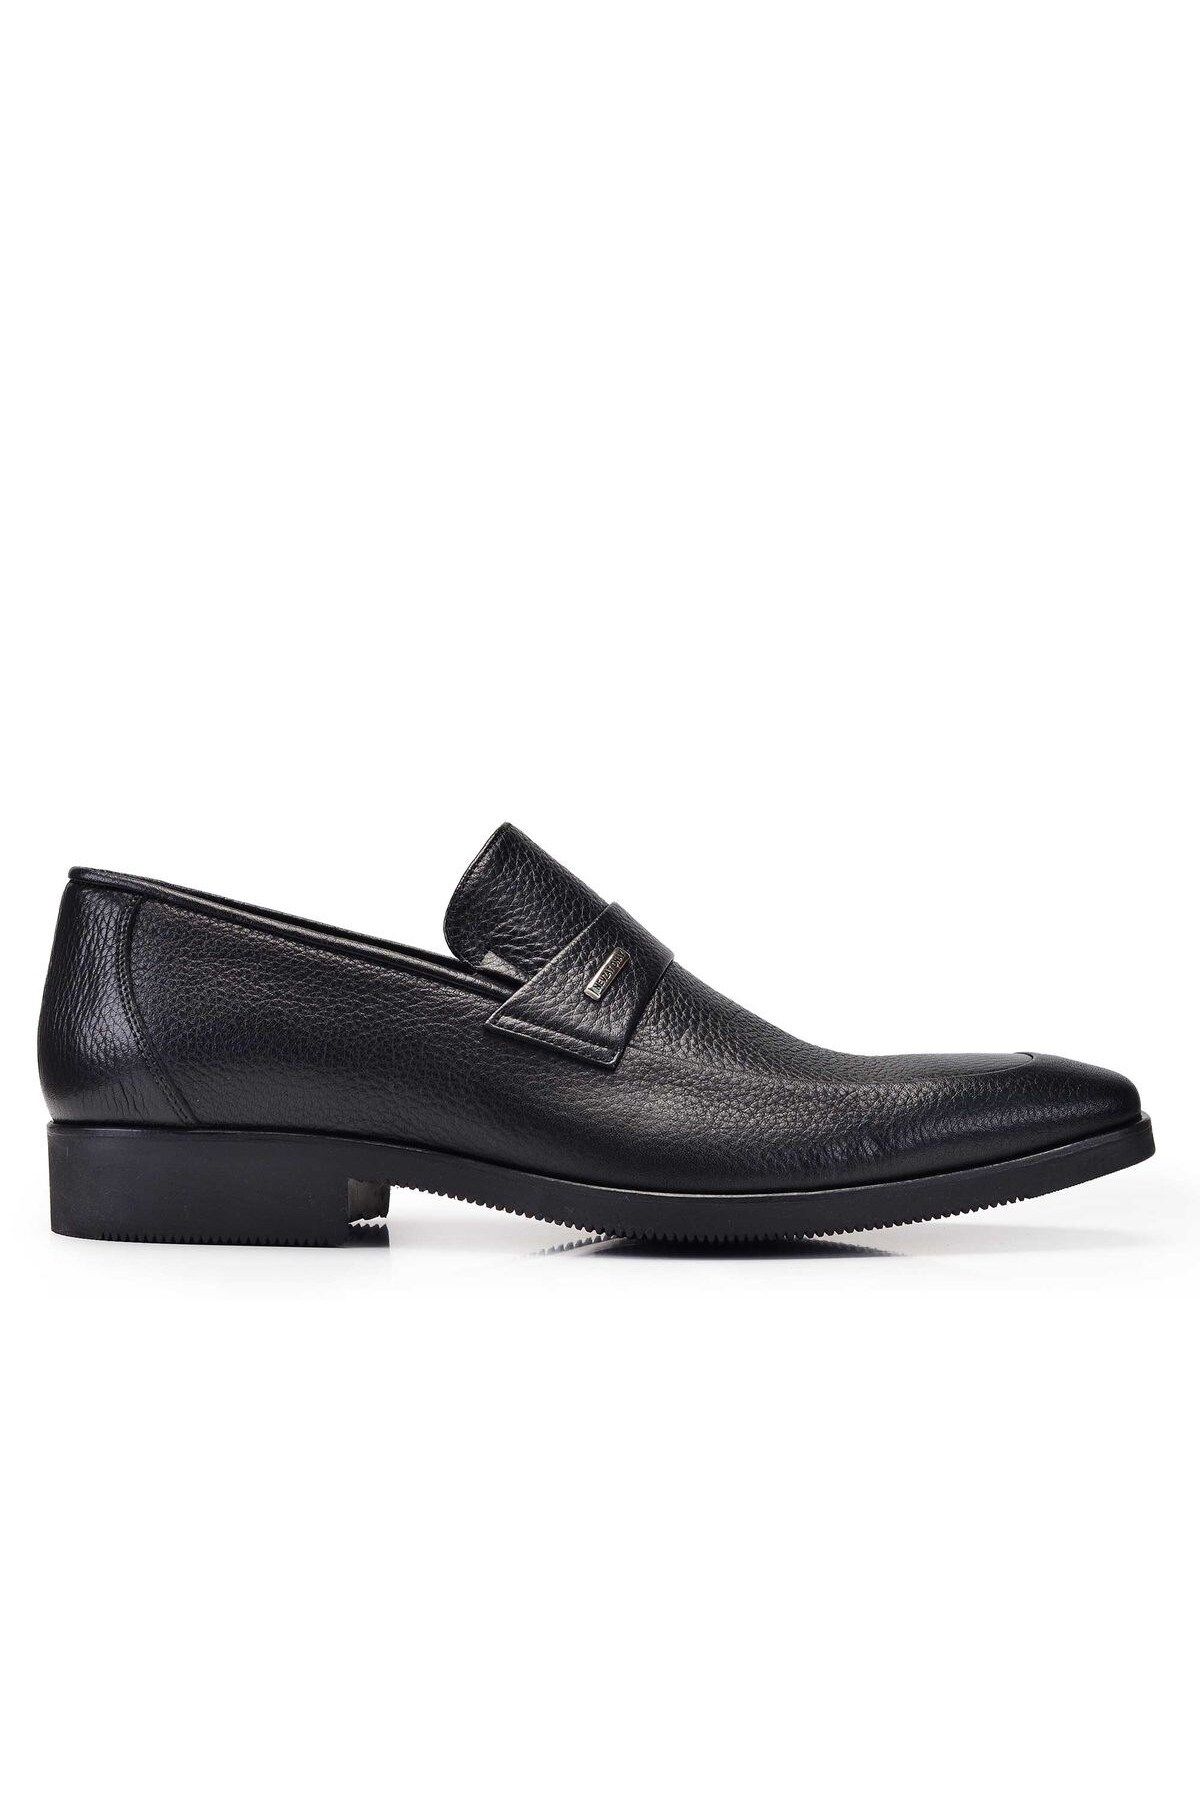 Nevzat Onay Siyah Günlük Loafer Erkek Ayakkabı -11271-